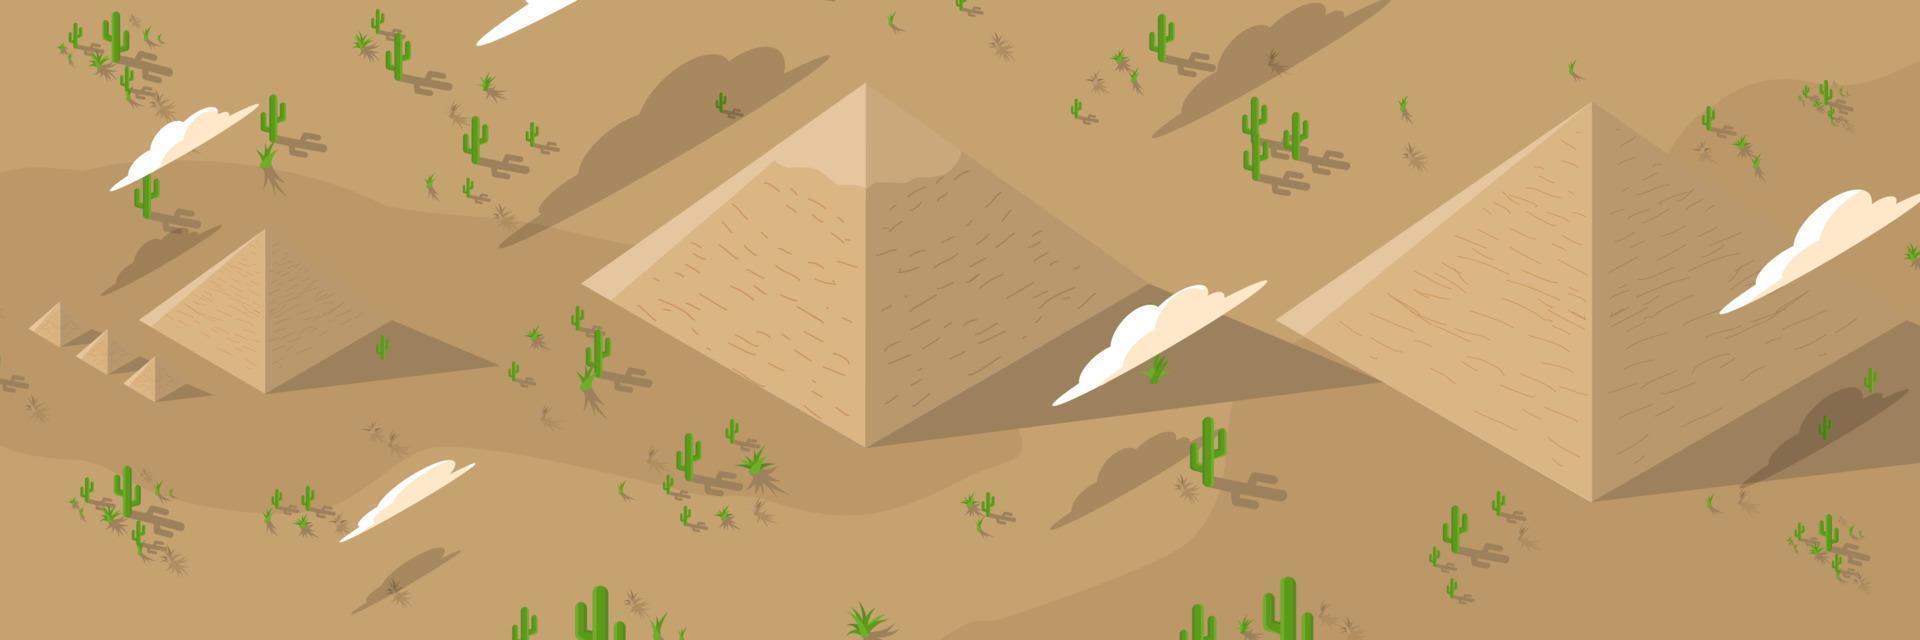 pirâmides do Egito em estilo simples. pirâmides em ilustração vetorial plana do deserto. fundo panorâmico dos desenhos animados da paisagem egípcia. ilustração vetorial vetor